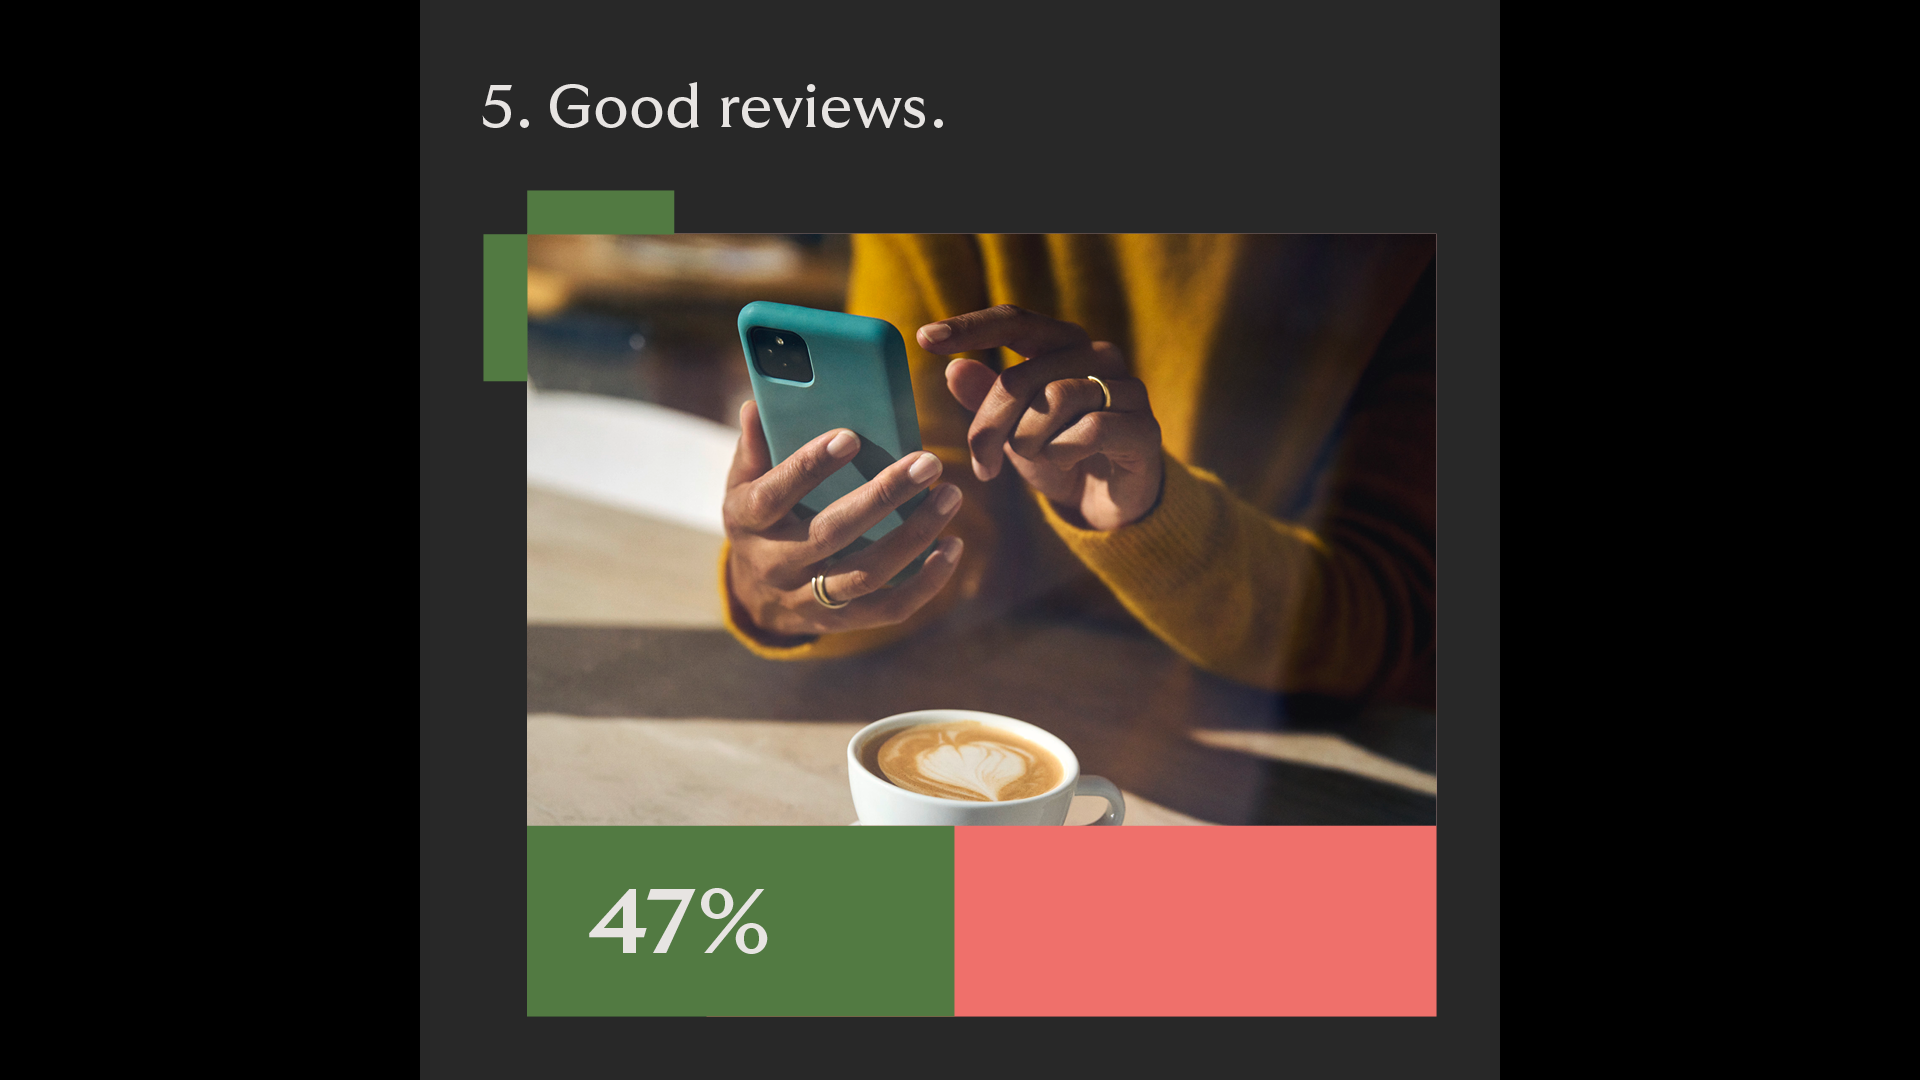 demand good reviews